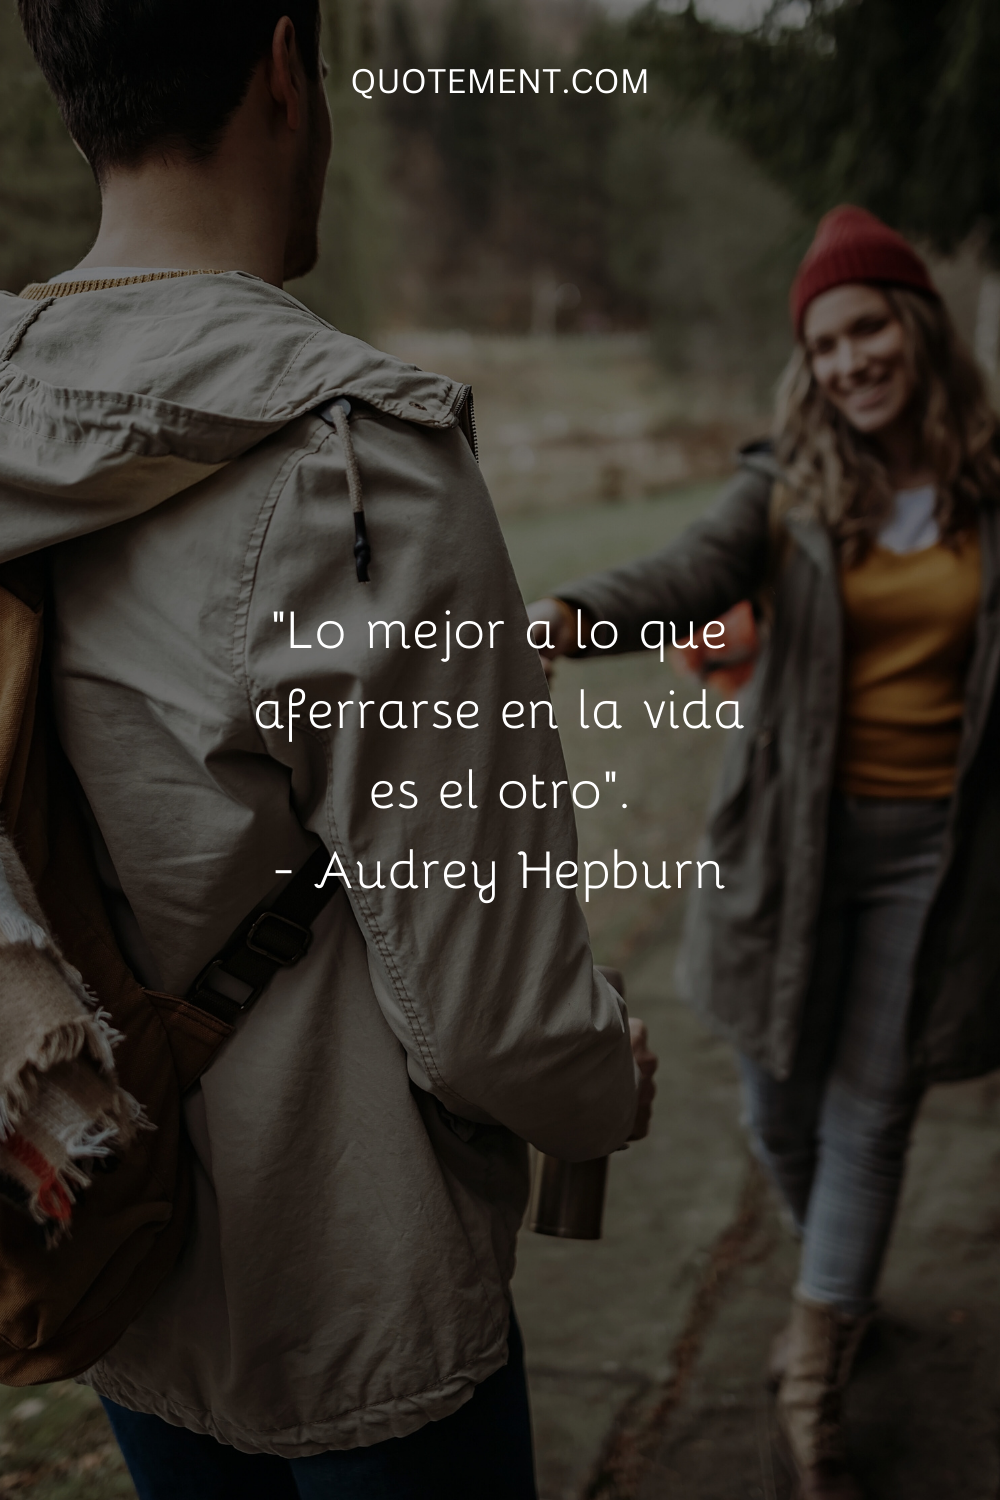 Lo mejor a lo que aferrarse en la vida es el otro. - Audrey Hepburn